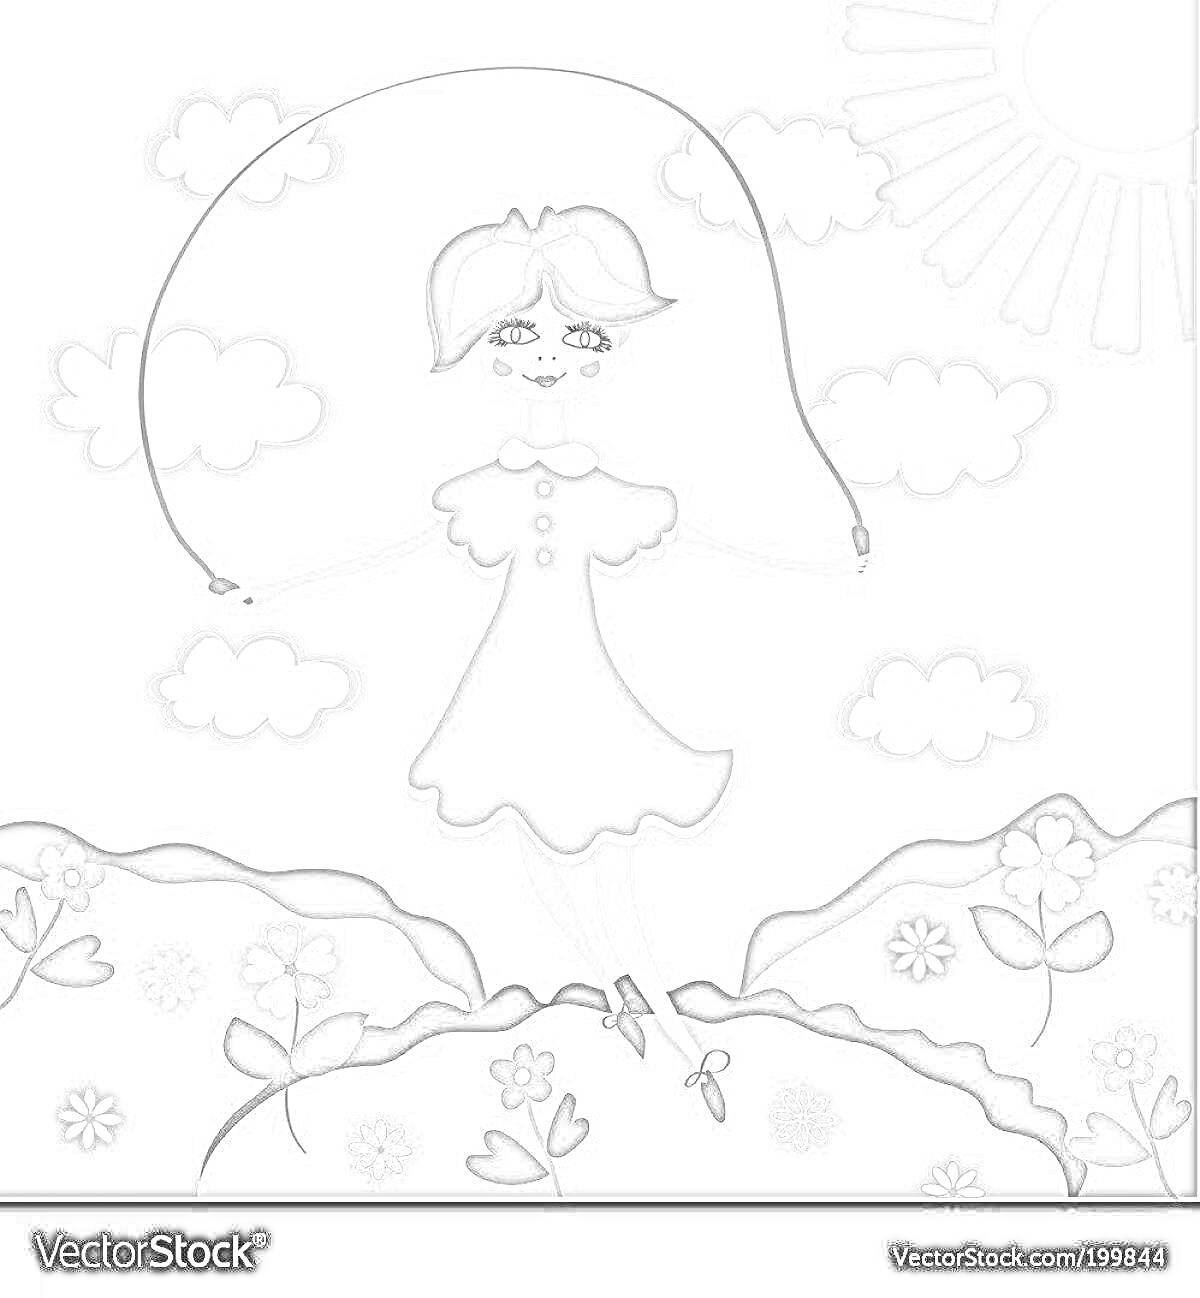 Раскраска Девочка прыгает через скакалку на лужайке с цветами, на заднем плане солнечное небо с облаками